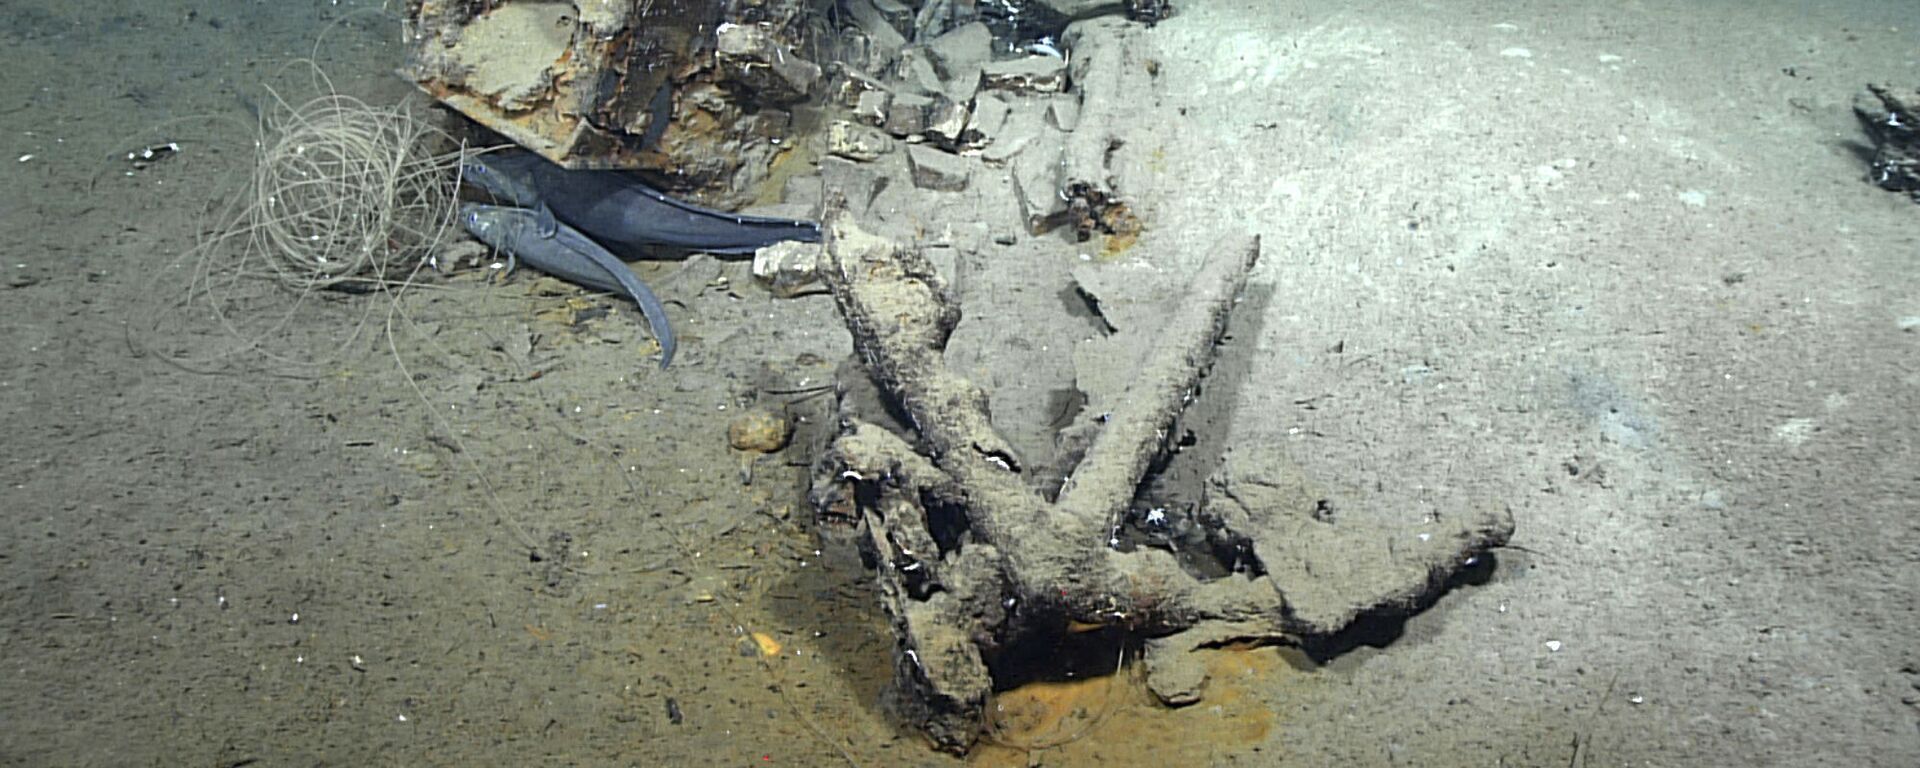 Imagem tirada em fevereiro de 2022 mostra o que pesquisadores acreditam ser restos do único naufrágio conhecido de um navio baleeiro no golfo do México - Sputnik Brasil, 1920, 25.03.2022